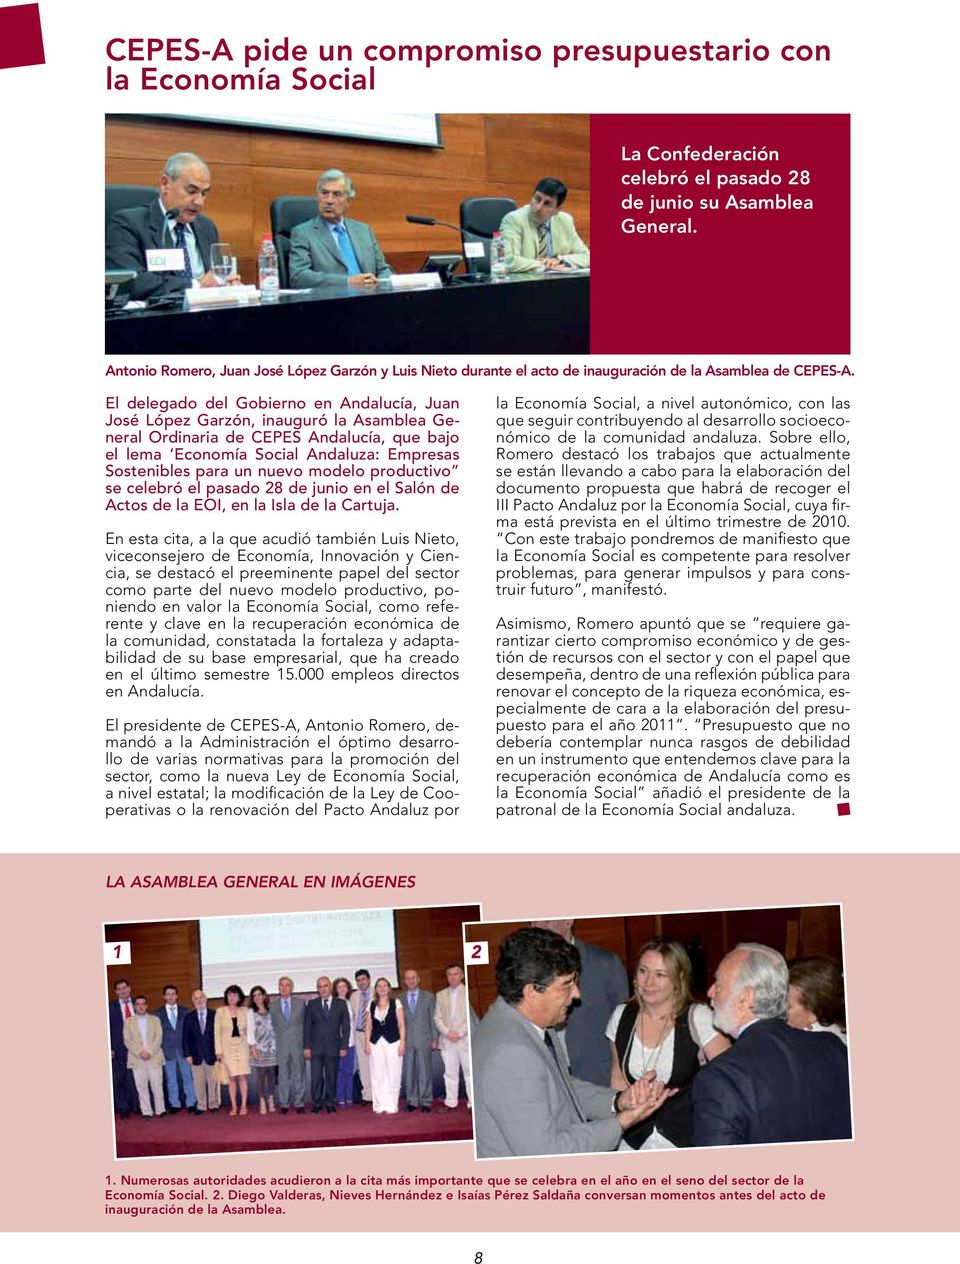 El delegado del Gobierno en Andalucía, Juan José López Garzón, inauguró la Asamblea General Ordinaria de CEPES Andalucía, que bajo el lema Economía Social Andaluza: Empresas Sostenibles para un nuevo